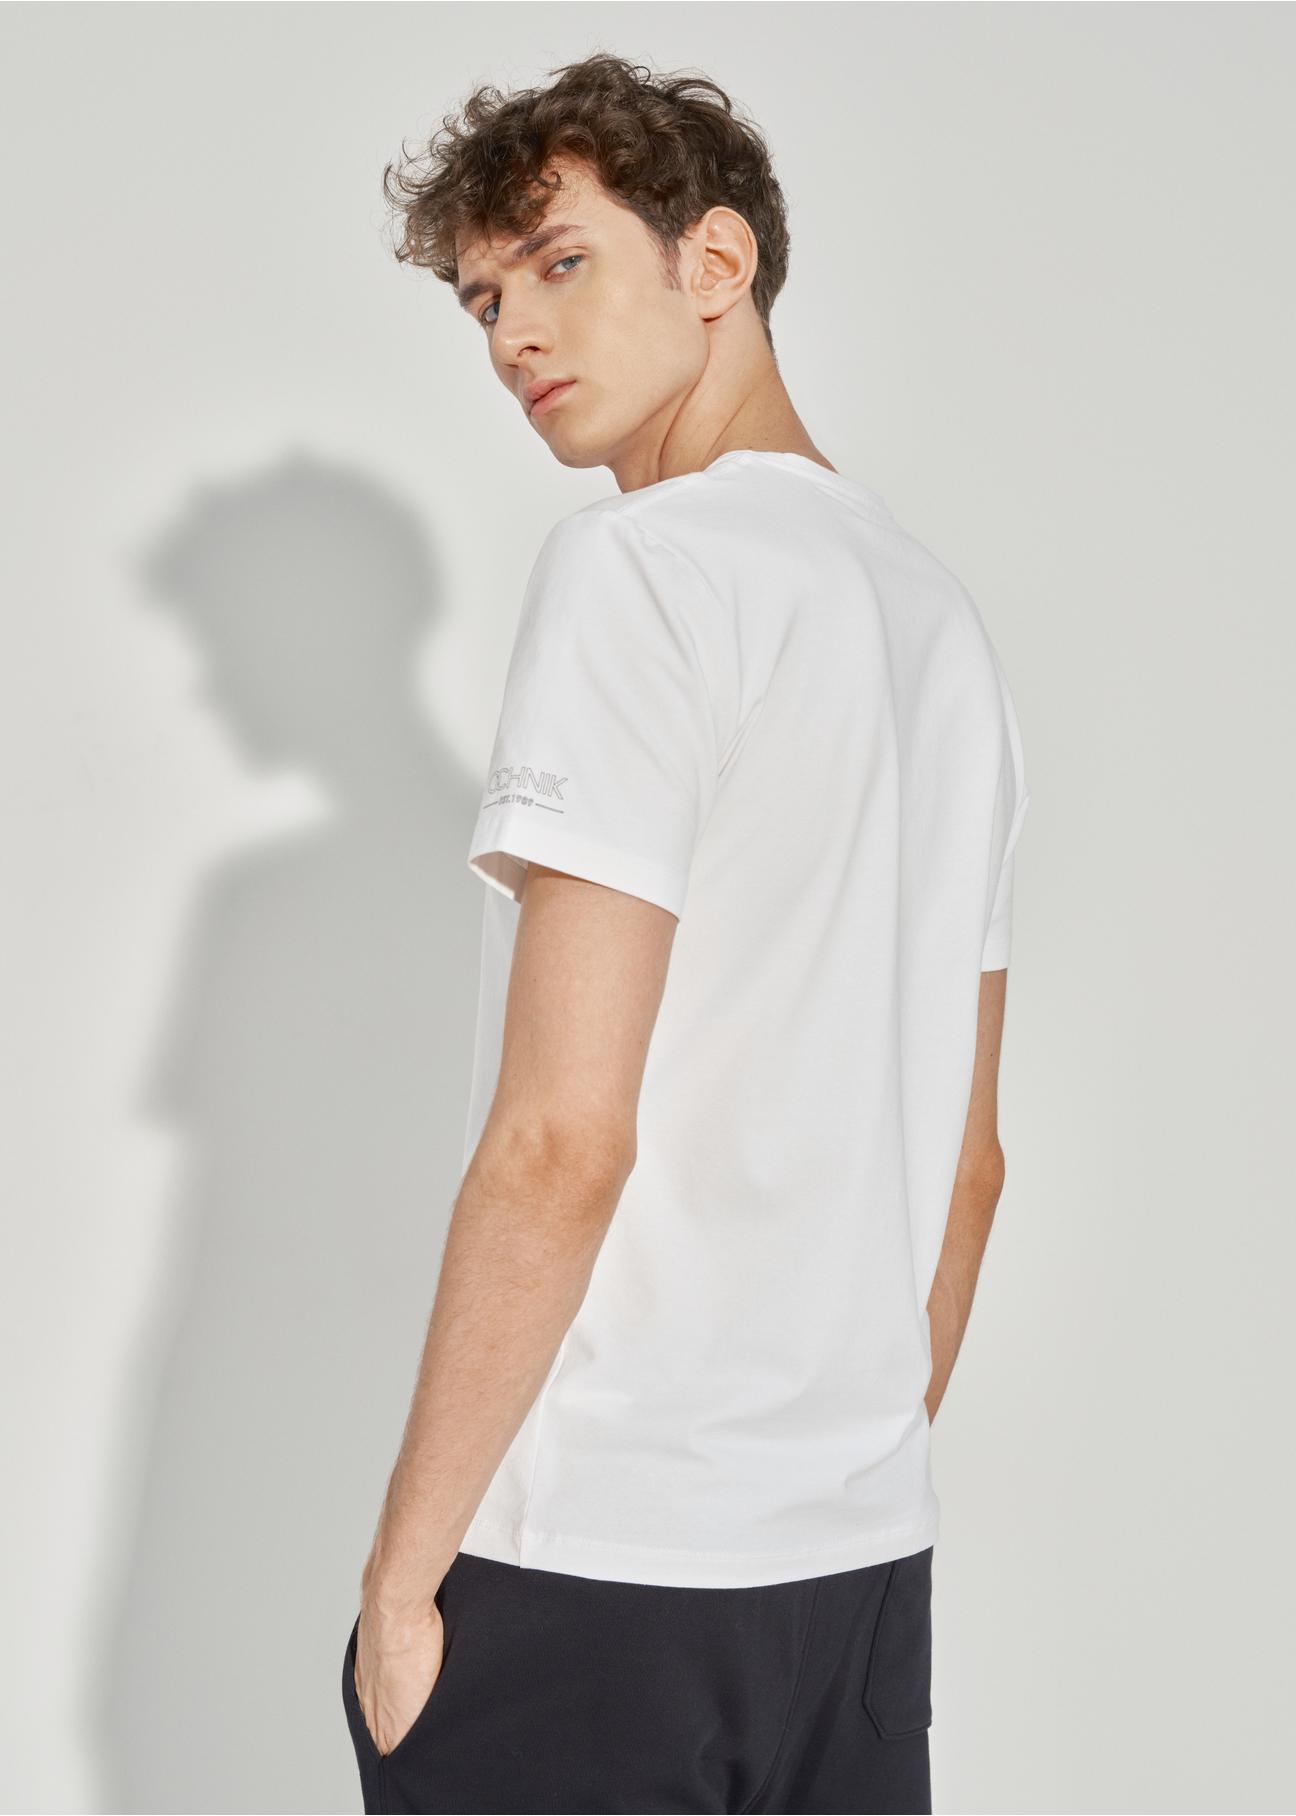 Trójpak białych T-shirtów męskich basic ZESMT-0040-11(Z23)